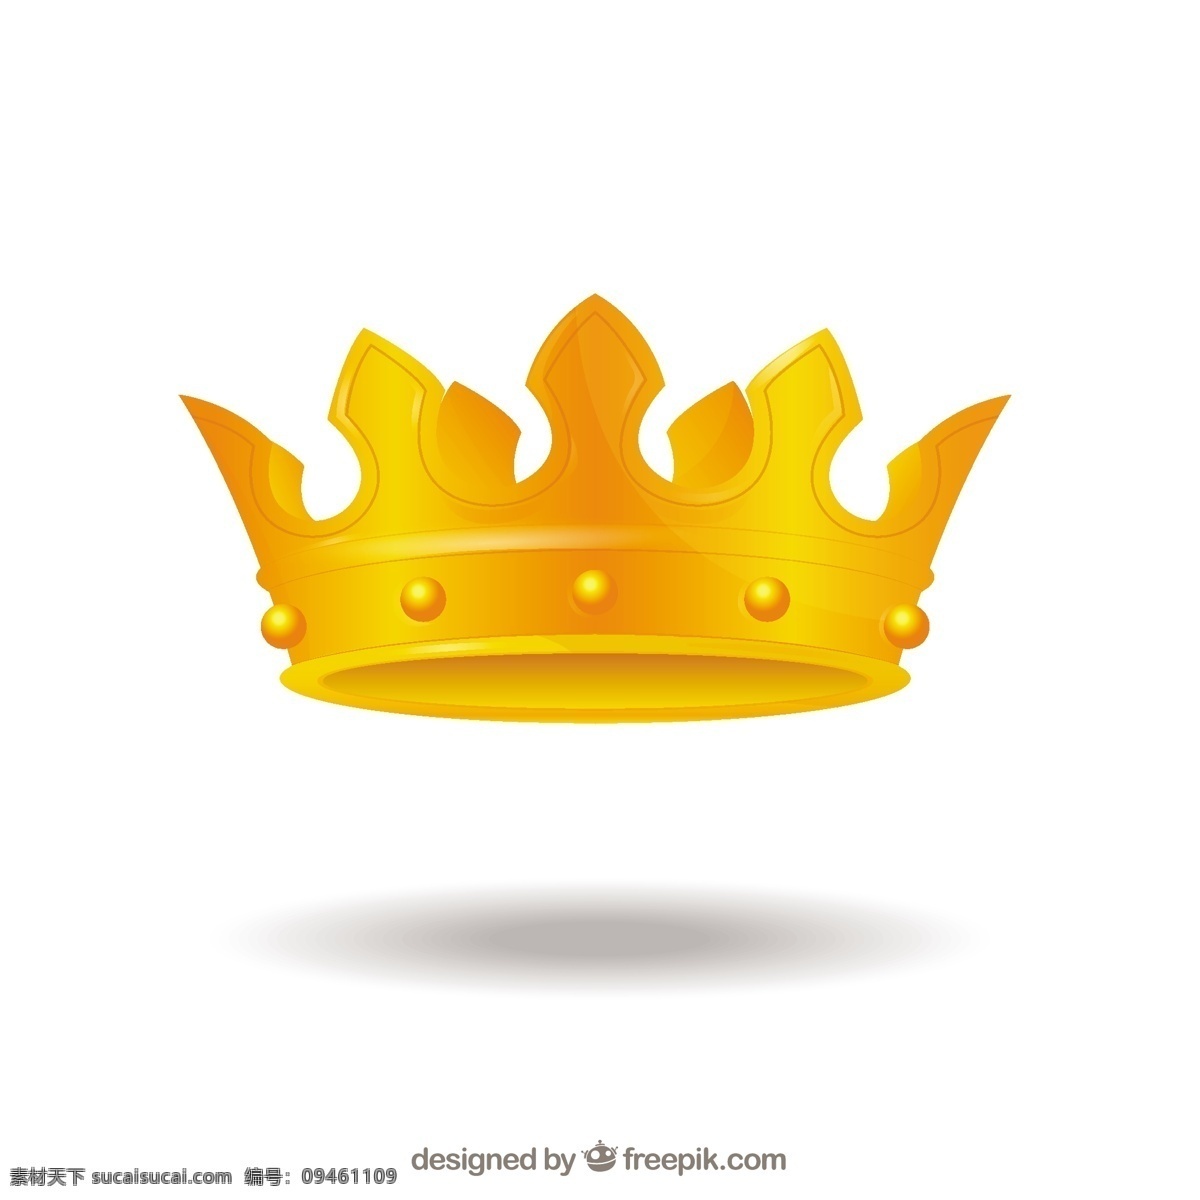 优雅 金色 皇冠 矢量 优雅的 金色皇冠 矢量素材